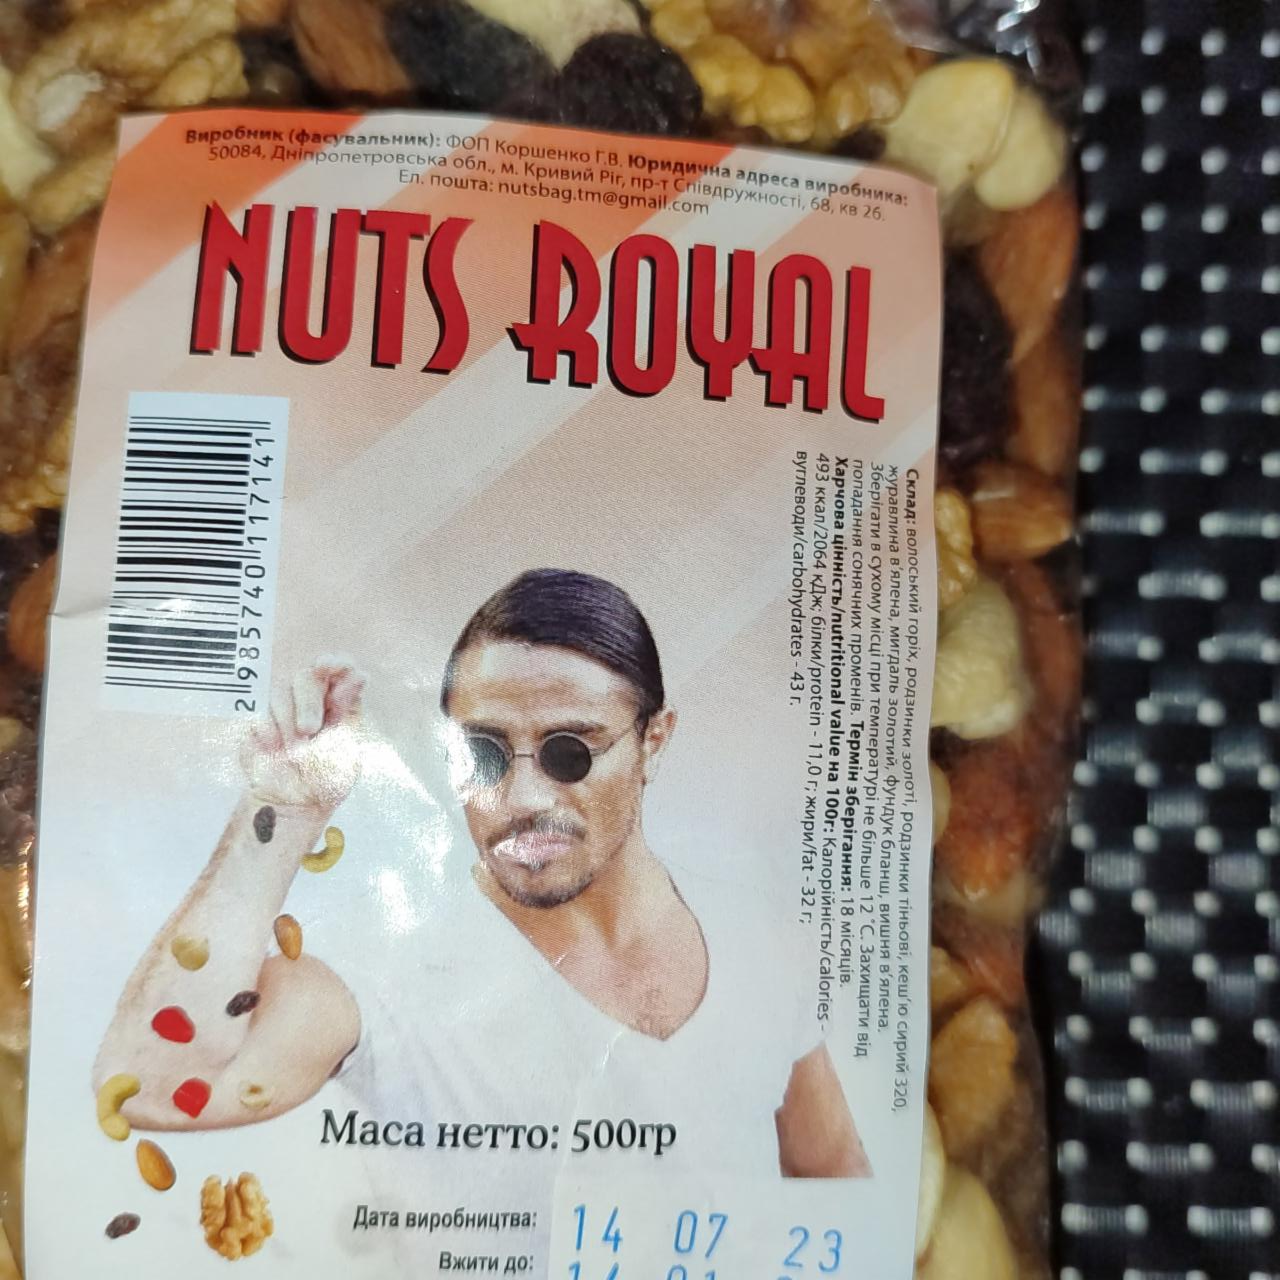 Фото - смесь орехов и сухофруктов Nuts royal